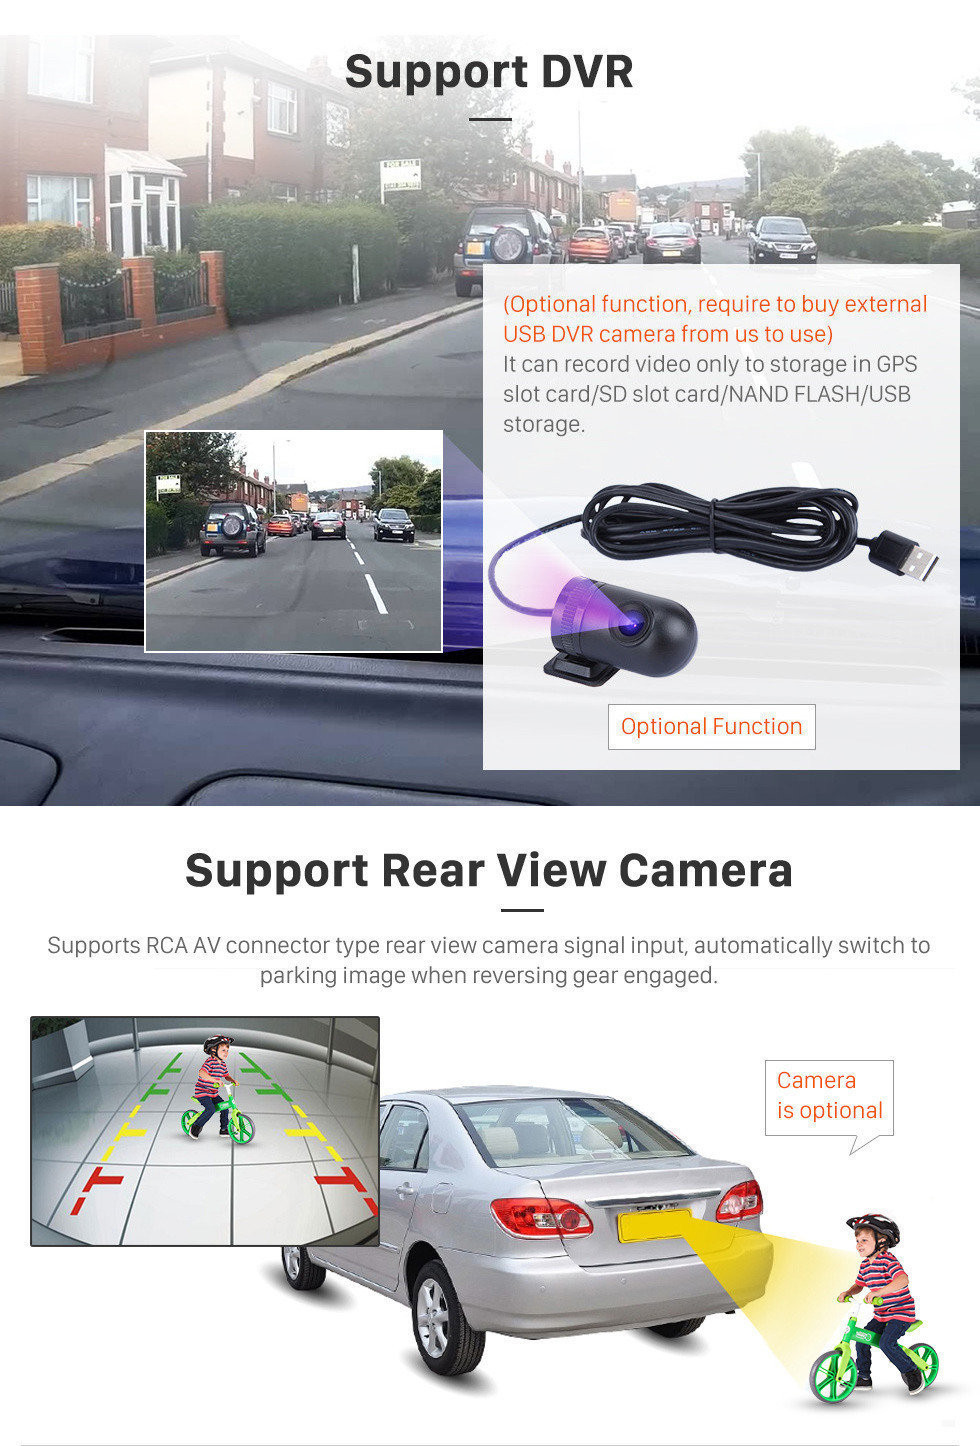 Seicane 2012-2017 KIA CEED RHD 9-дюймовый мультимедийный проигрыватель Android 13.0 GPS-навигация HD с сенсорным экраном Bluetooth-радио WIFI Музыка Поддержка Mirror Link Управление рулевым колесом Carplay USB DVD